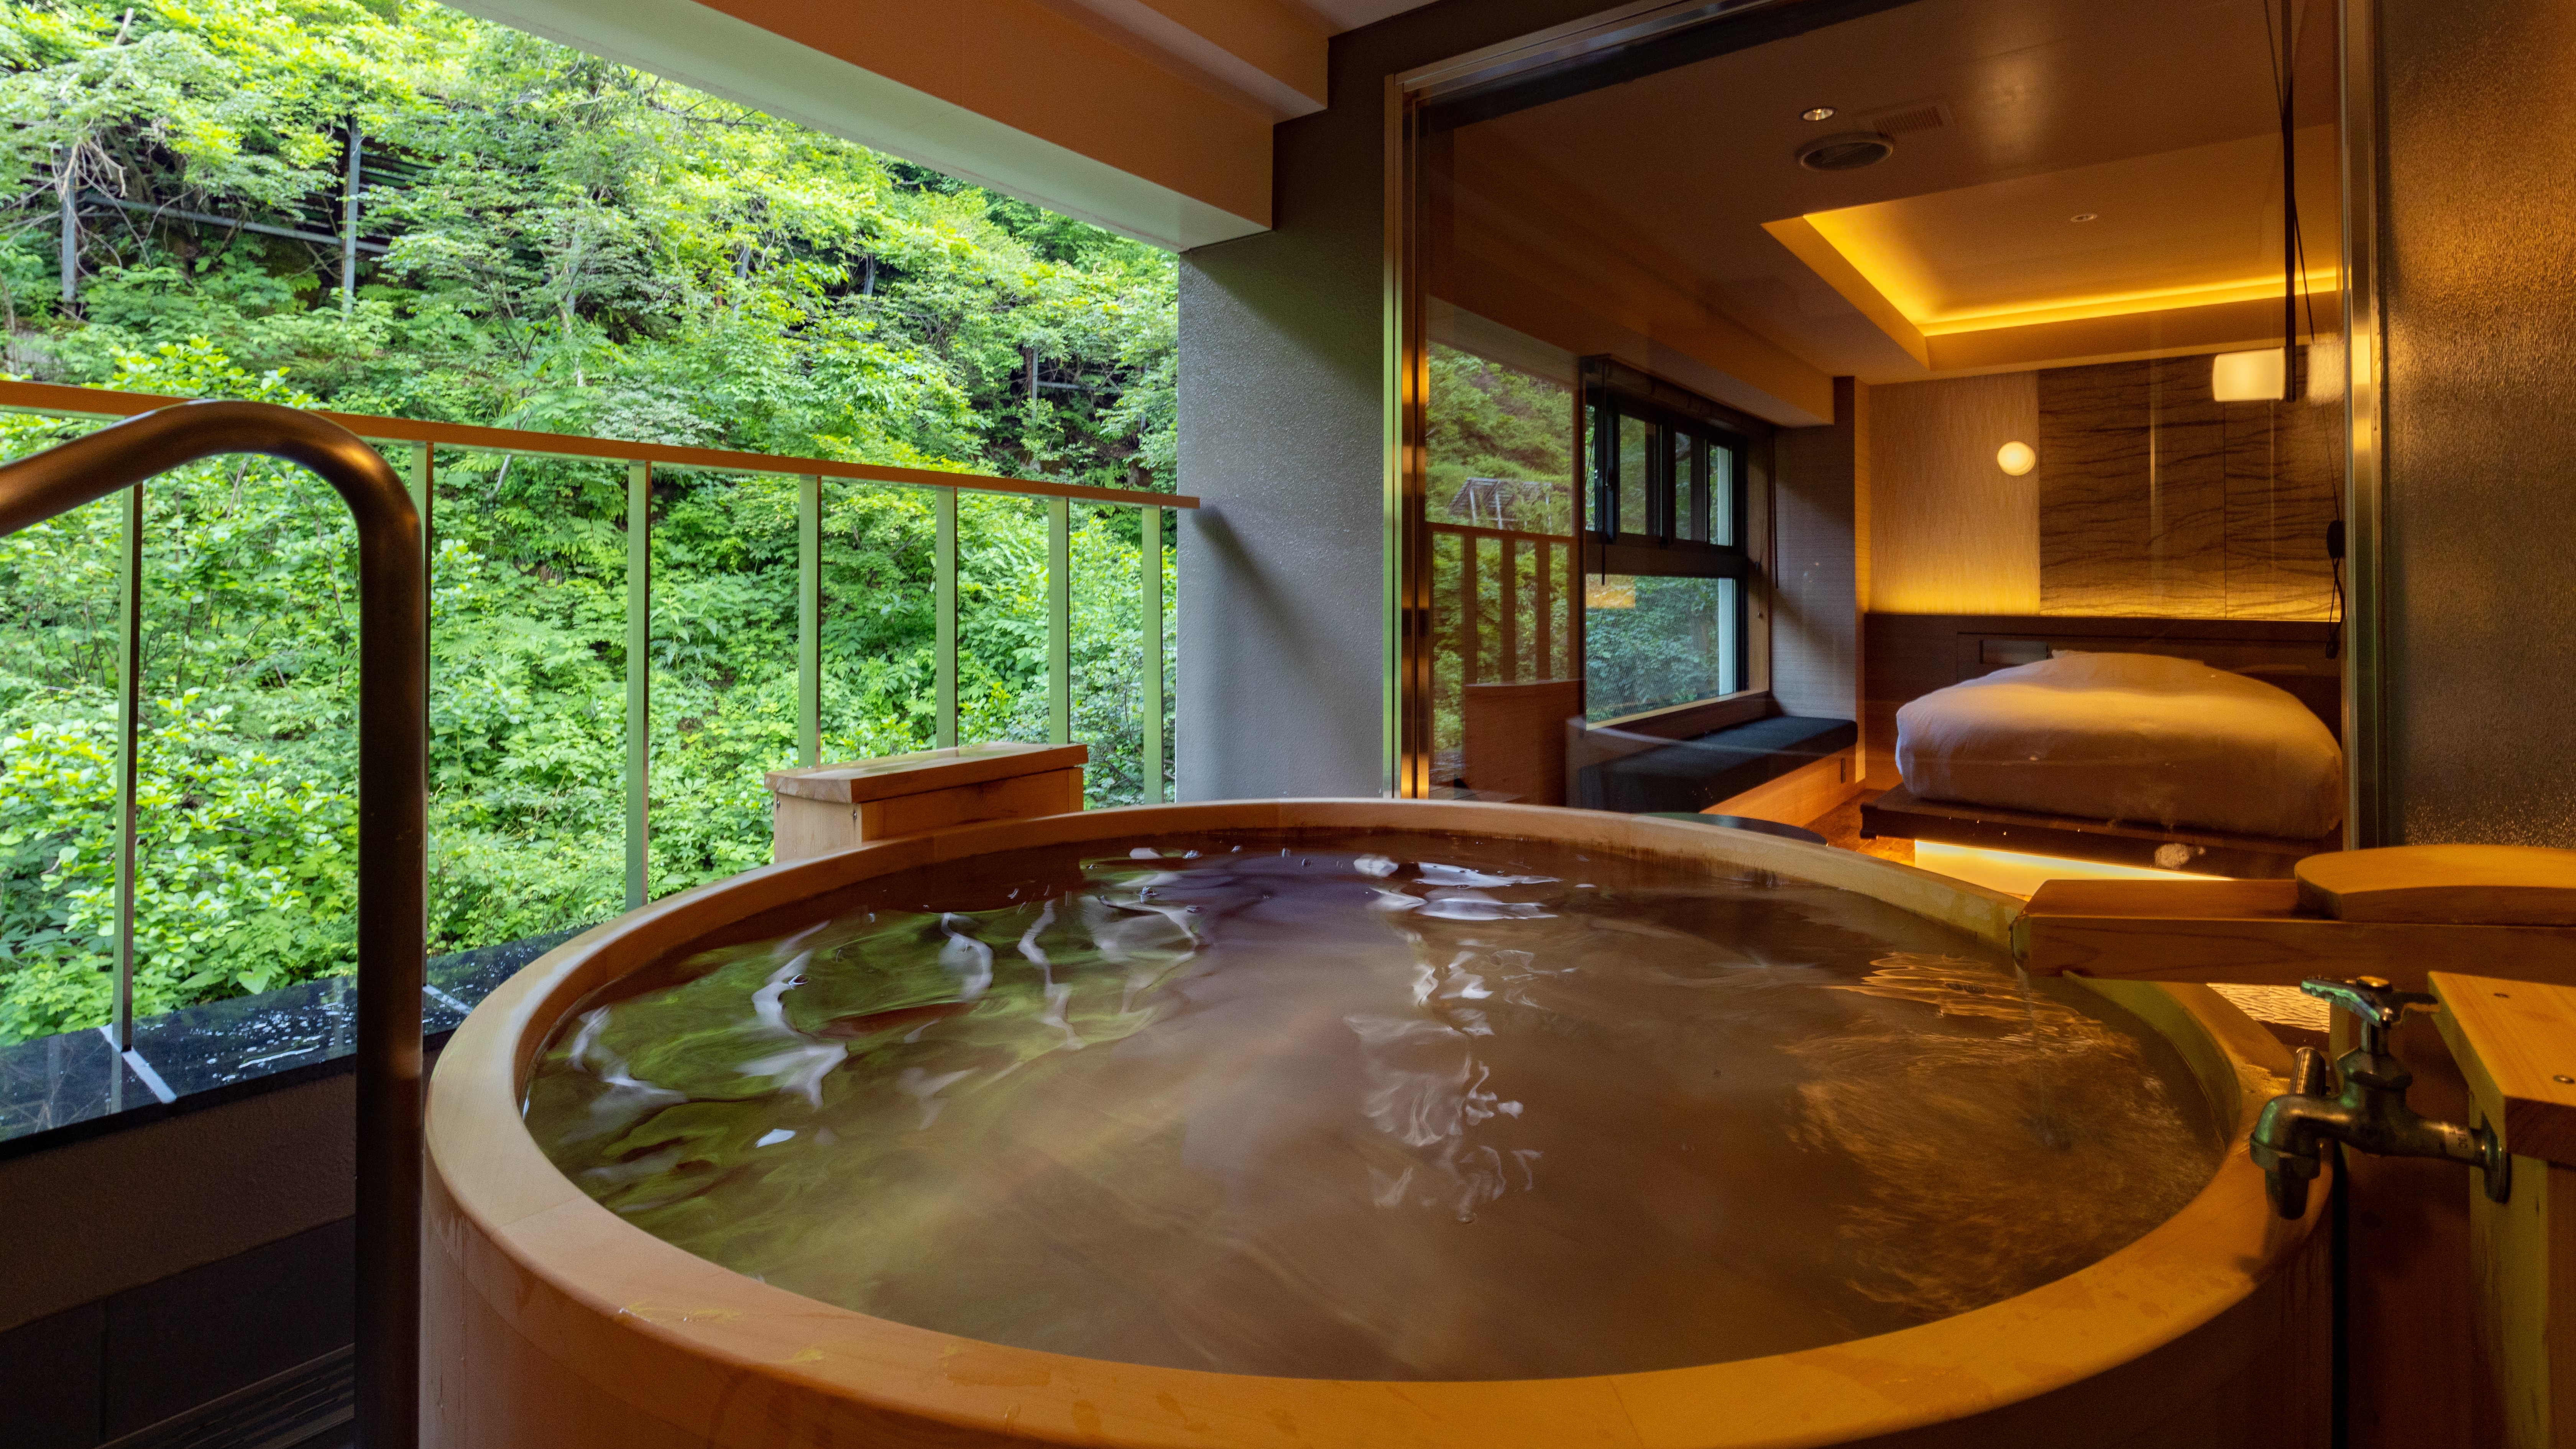 【檜】檜造りの露天風呂は、檜の香りが落ち着きをもたらしてくれます。